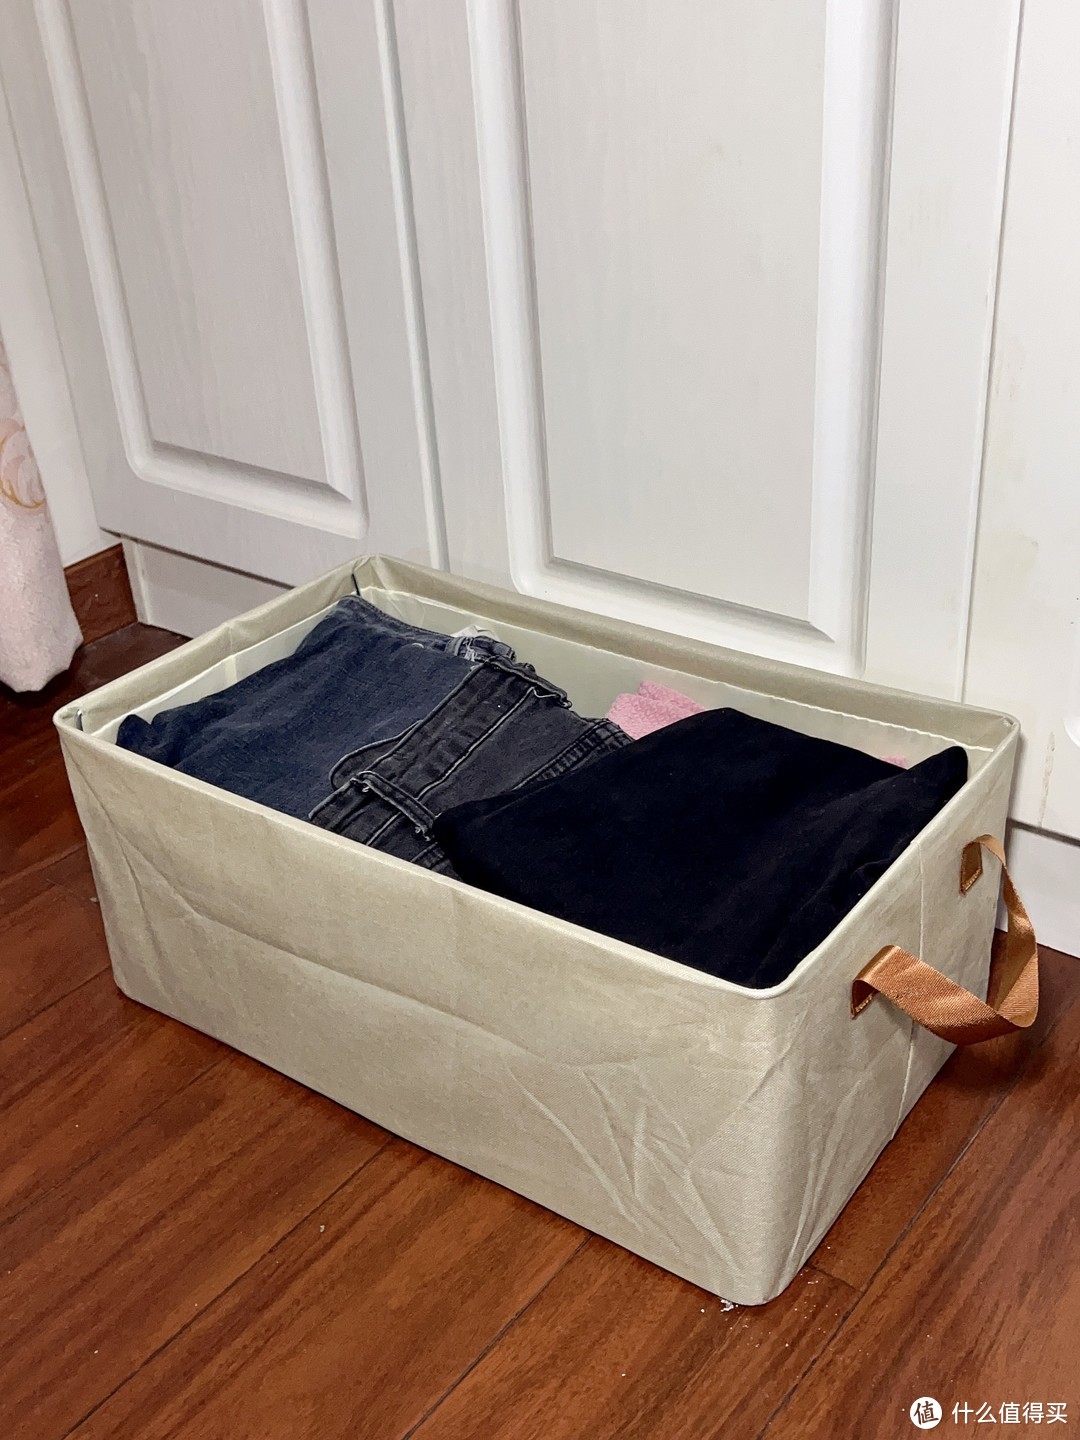 多功能衣服收纳盒：让你的衣柜更整洁!